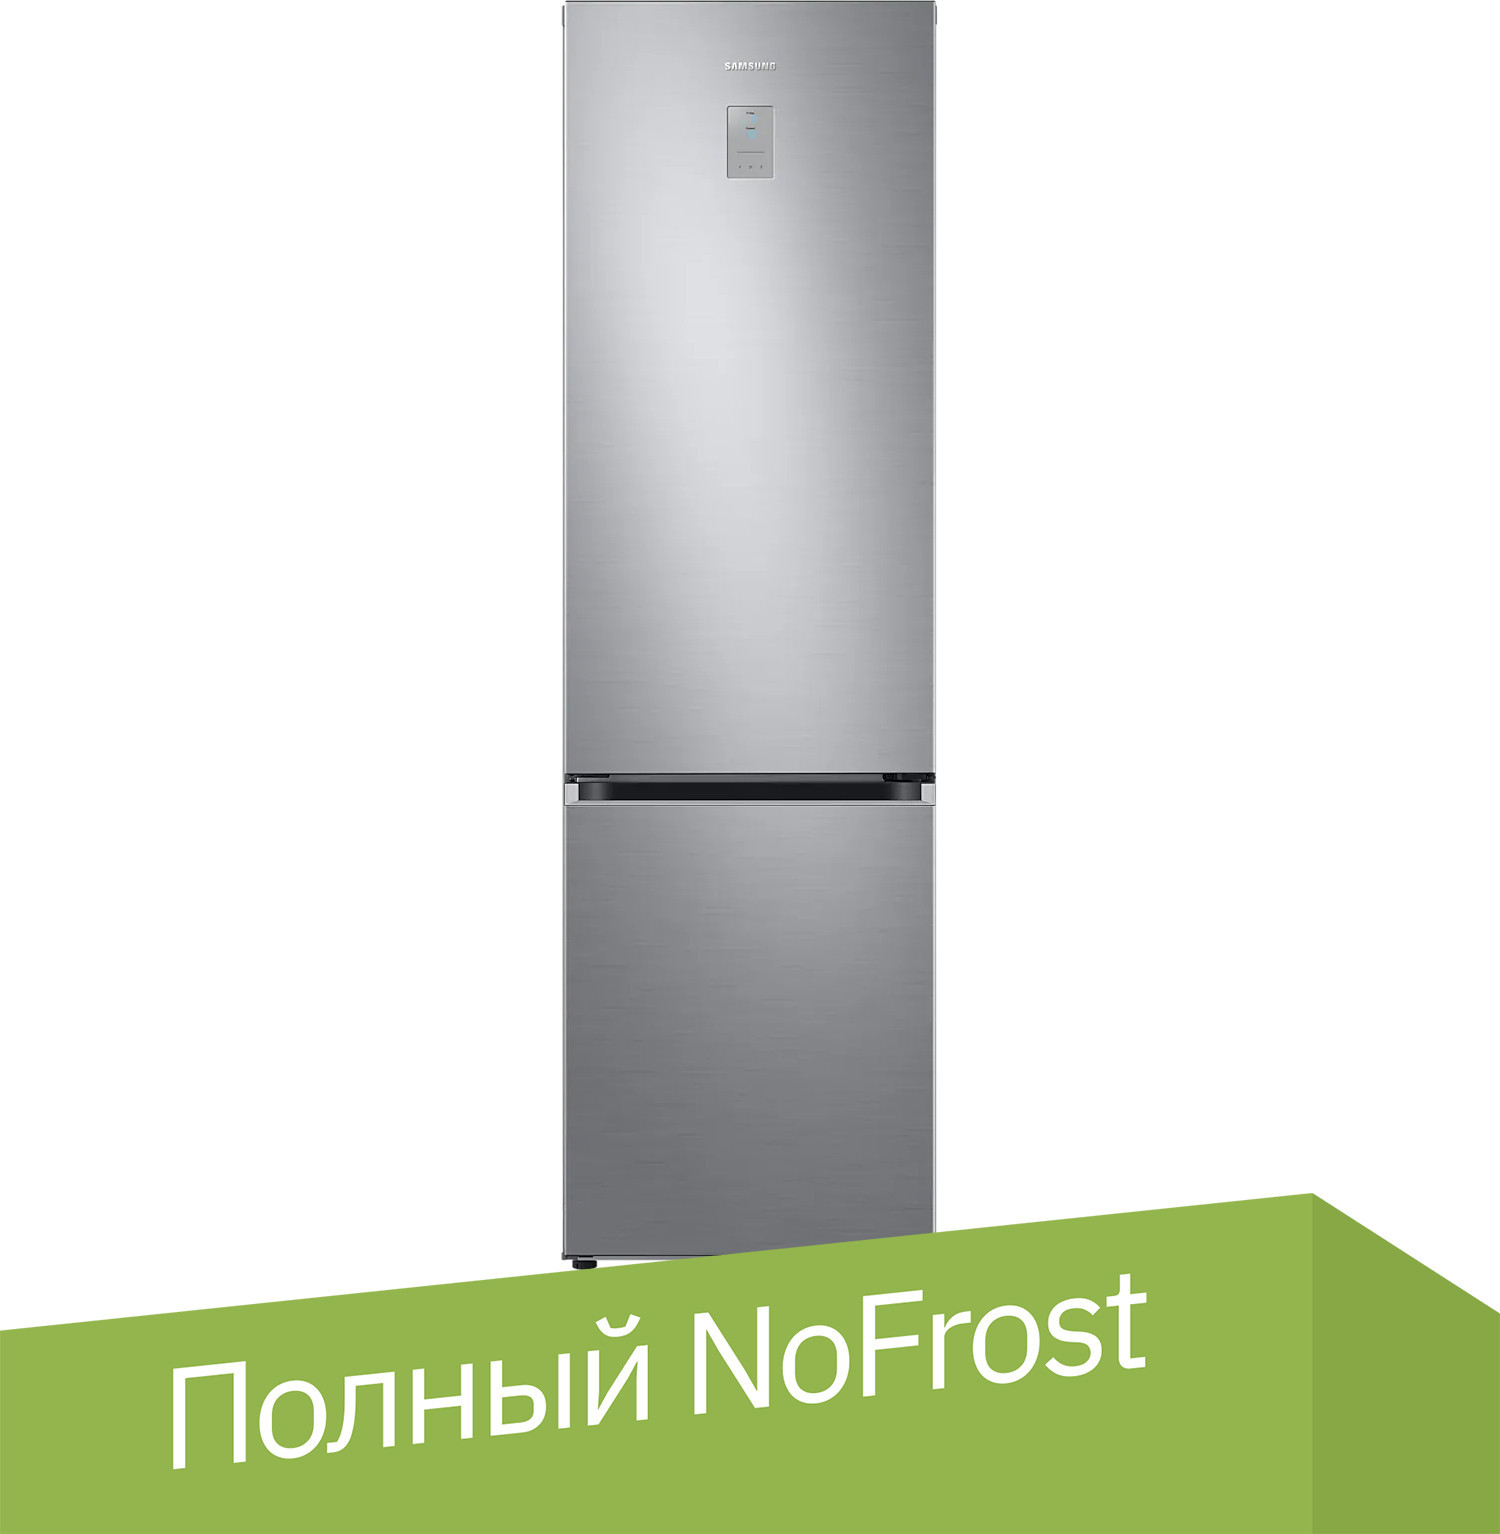 

Холодильник Samsung Grand+ RB38C775CS9/EF